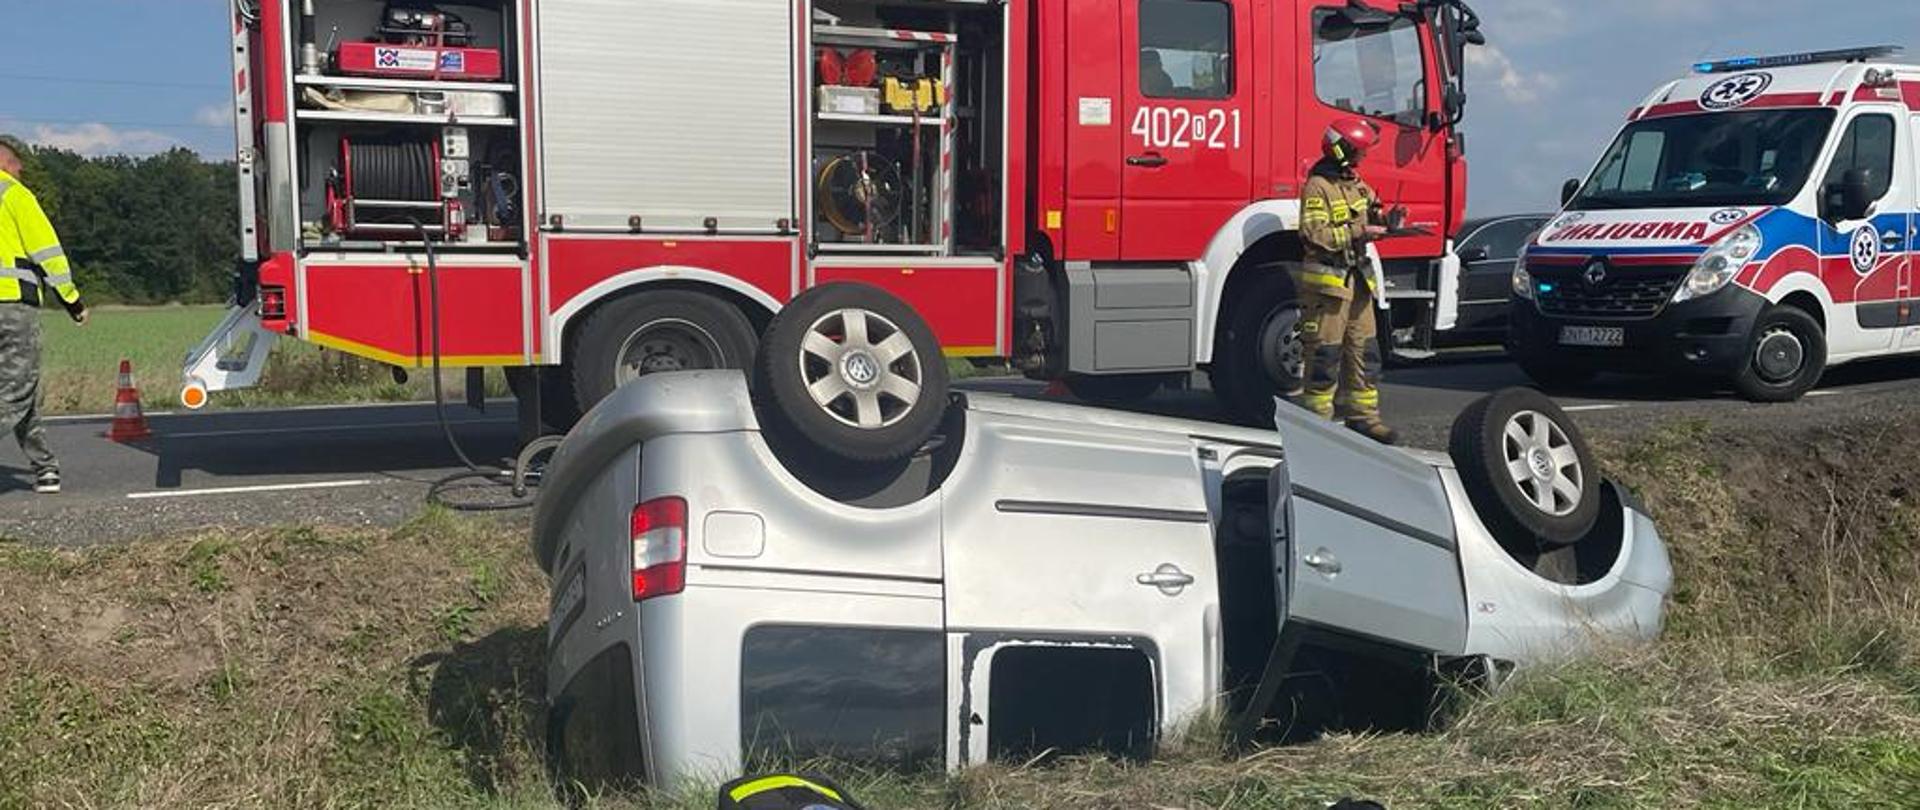 Wypadek samochodu osobowego na DW 385 w pobliżu miejscowości Grodków - zdjęcie przedstawia samochód osobowy leżący na dachu w przydrożnym rowie, w tle ustawiony jest pojazd pożarniczy oraz karetka pogotowia